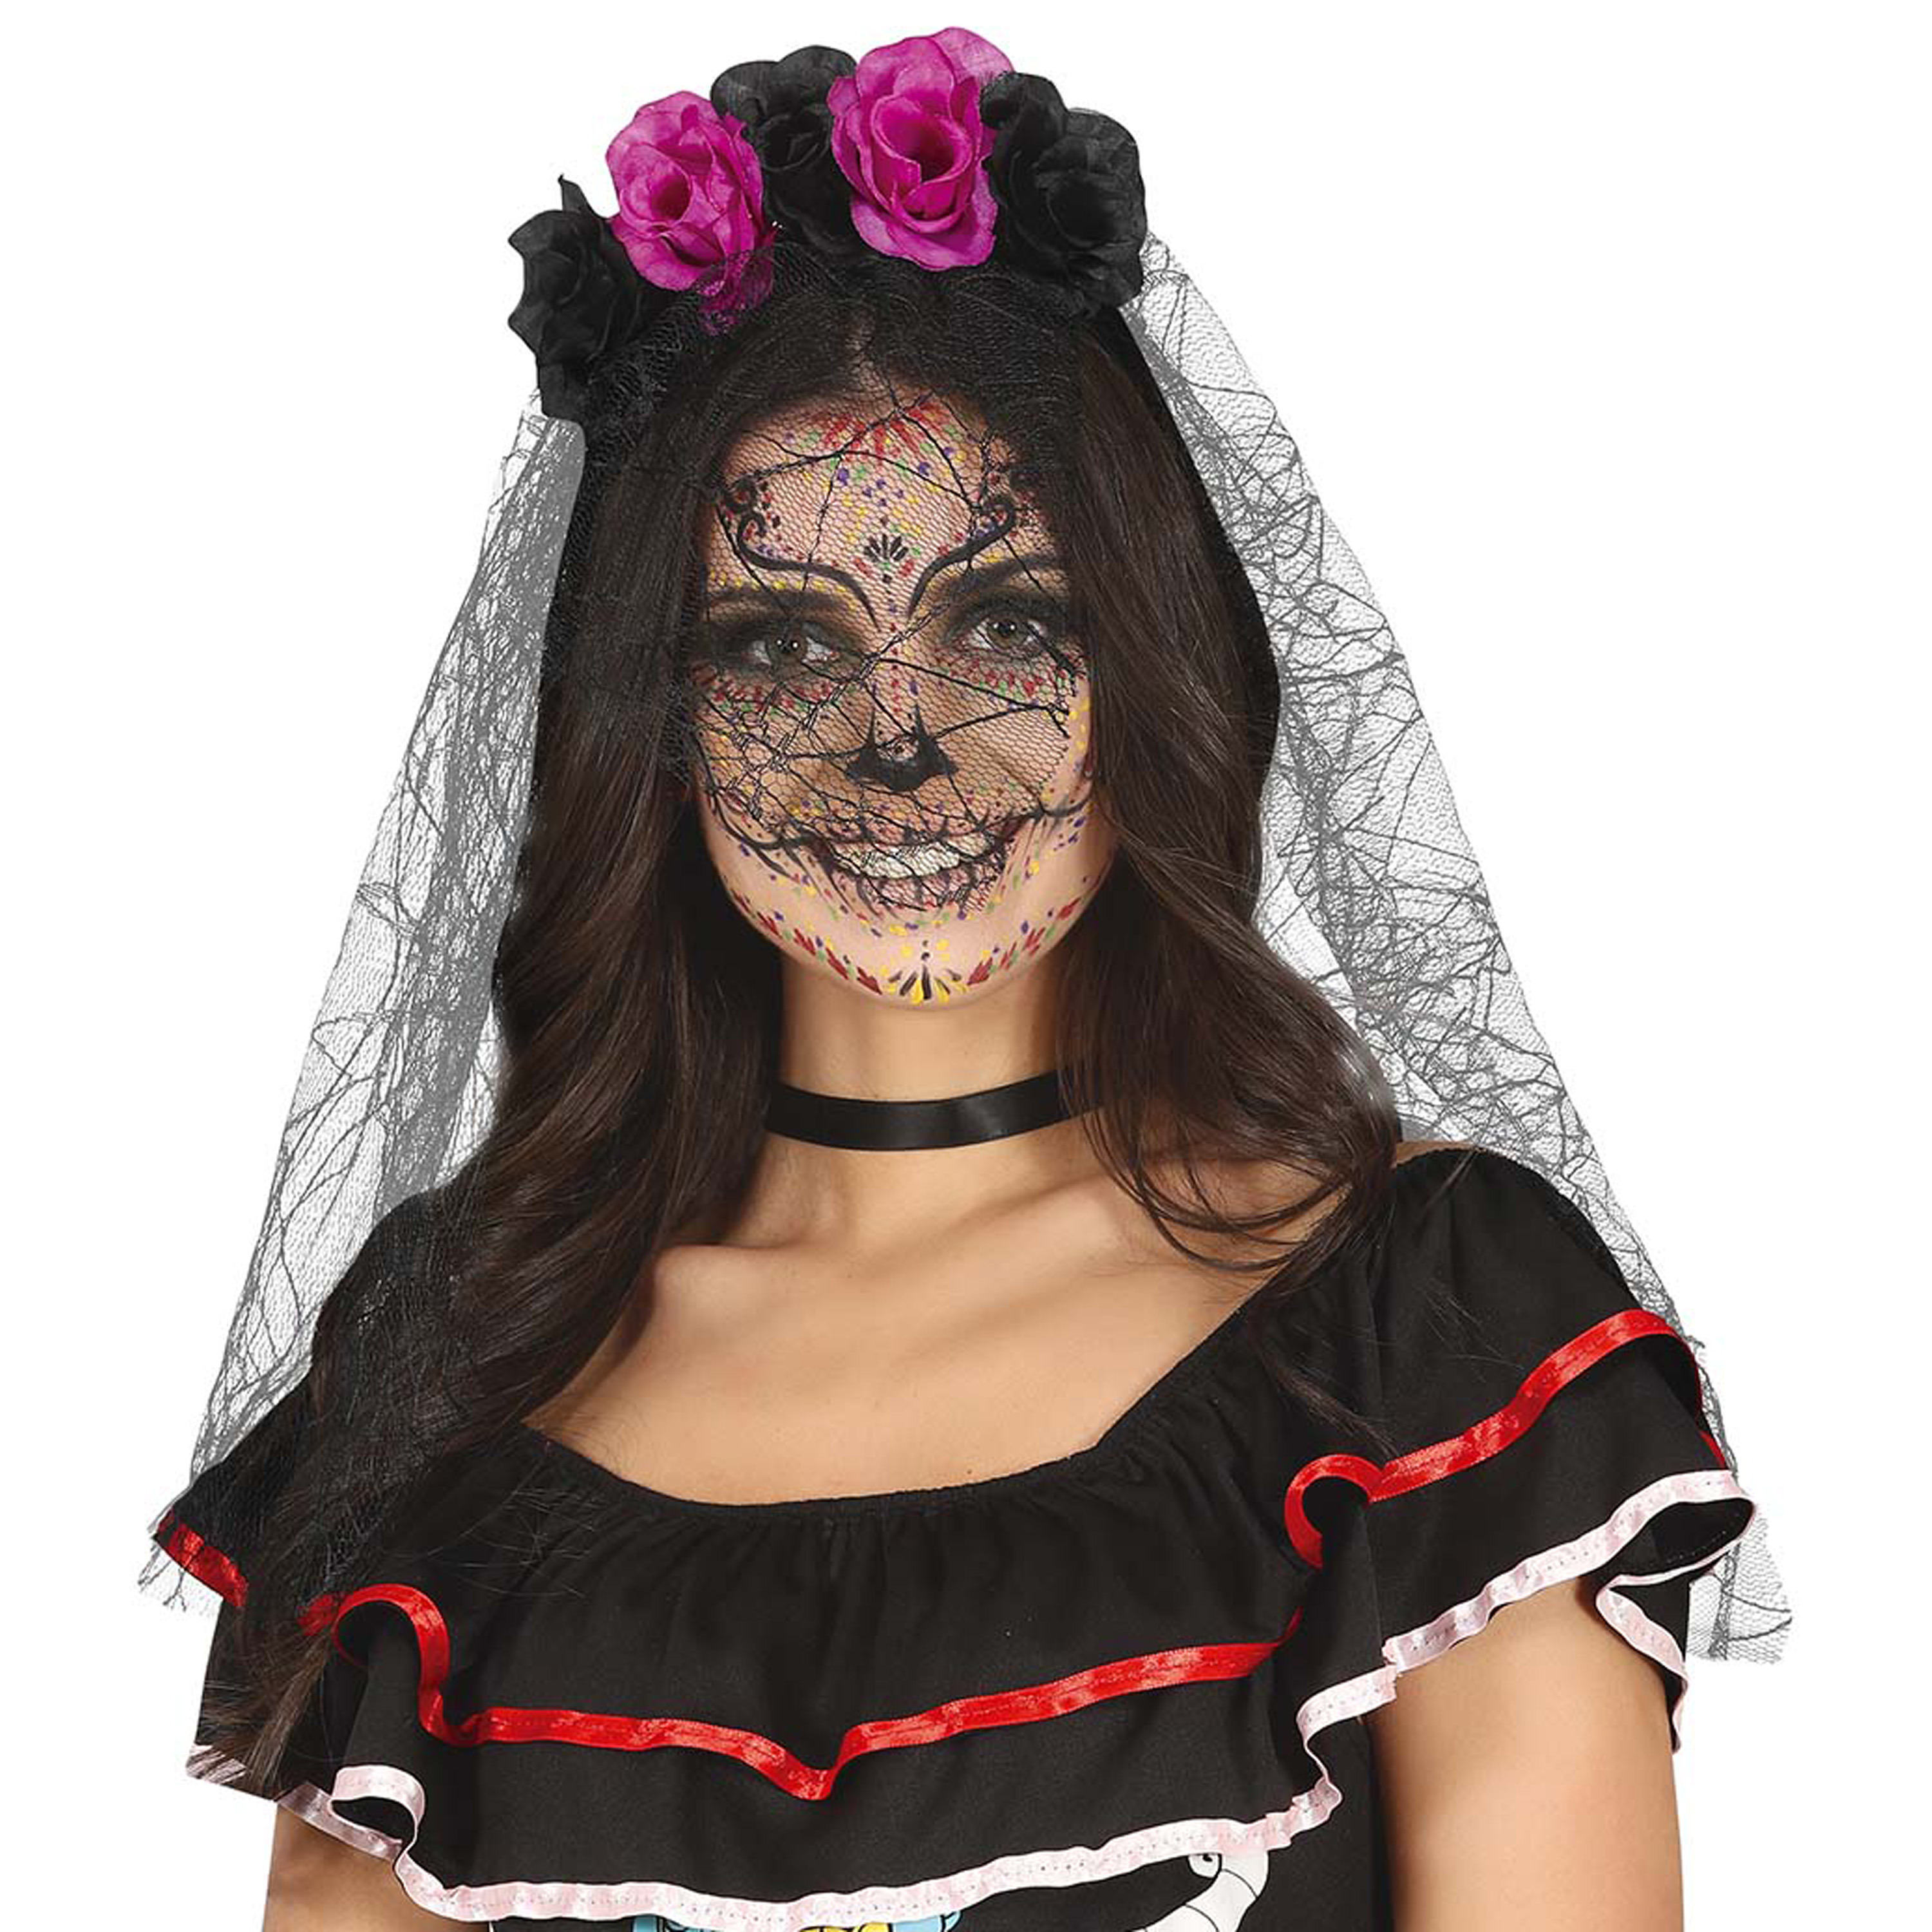 Halloween - Halloween thema diadeem met bloemen en sluier - one size - zwart/roze - meisjes/dames